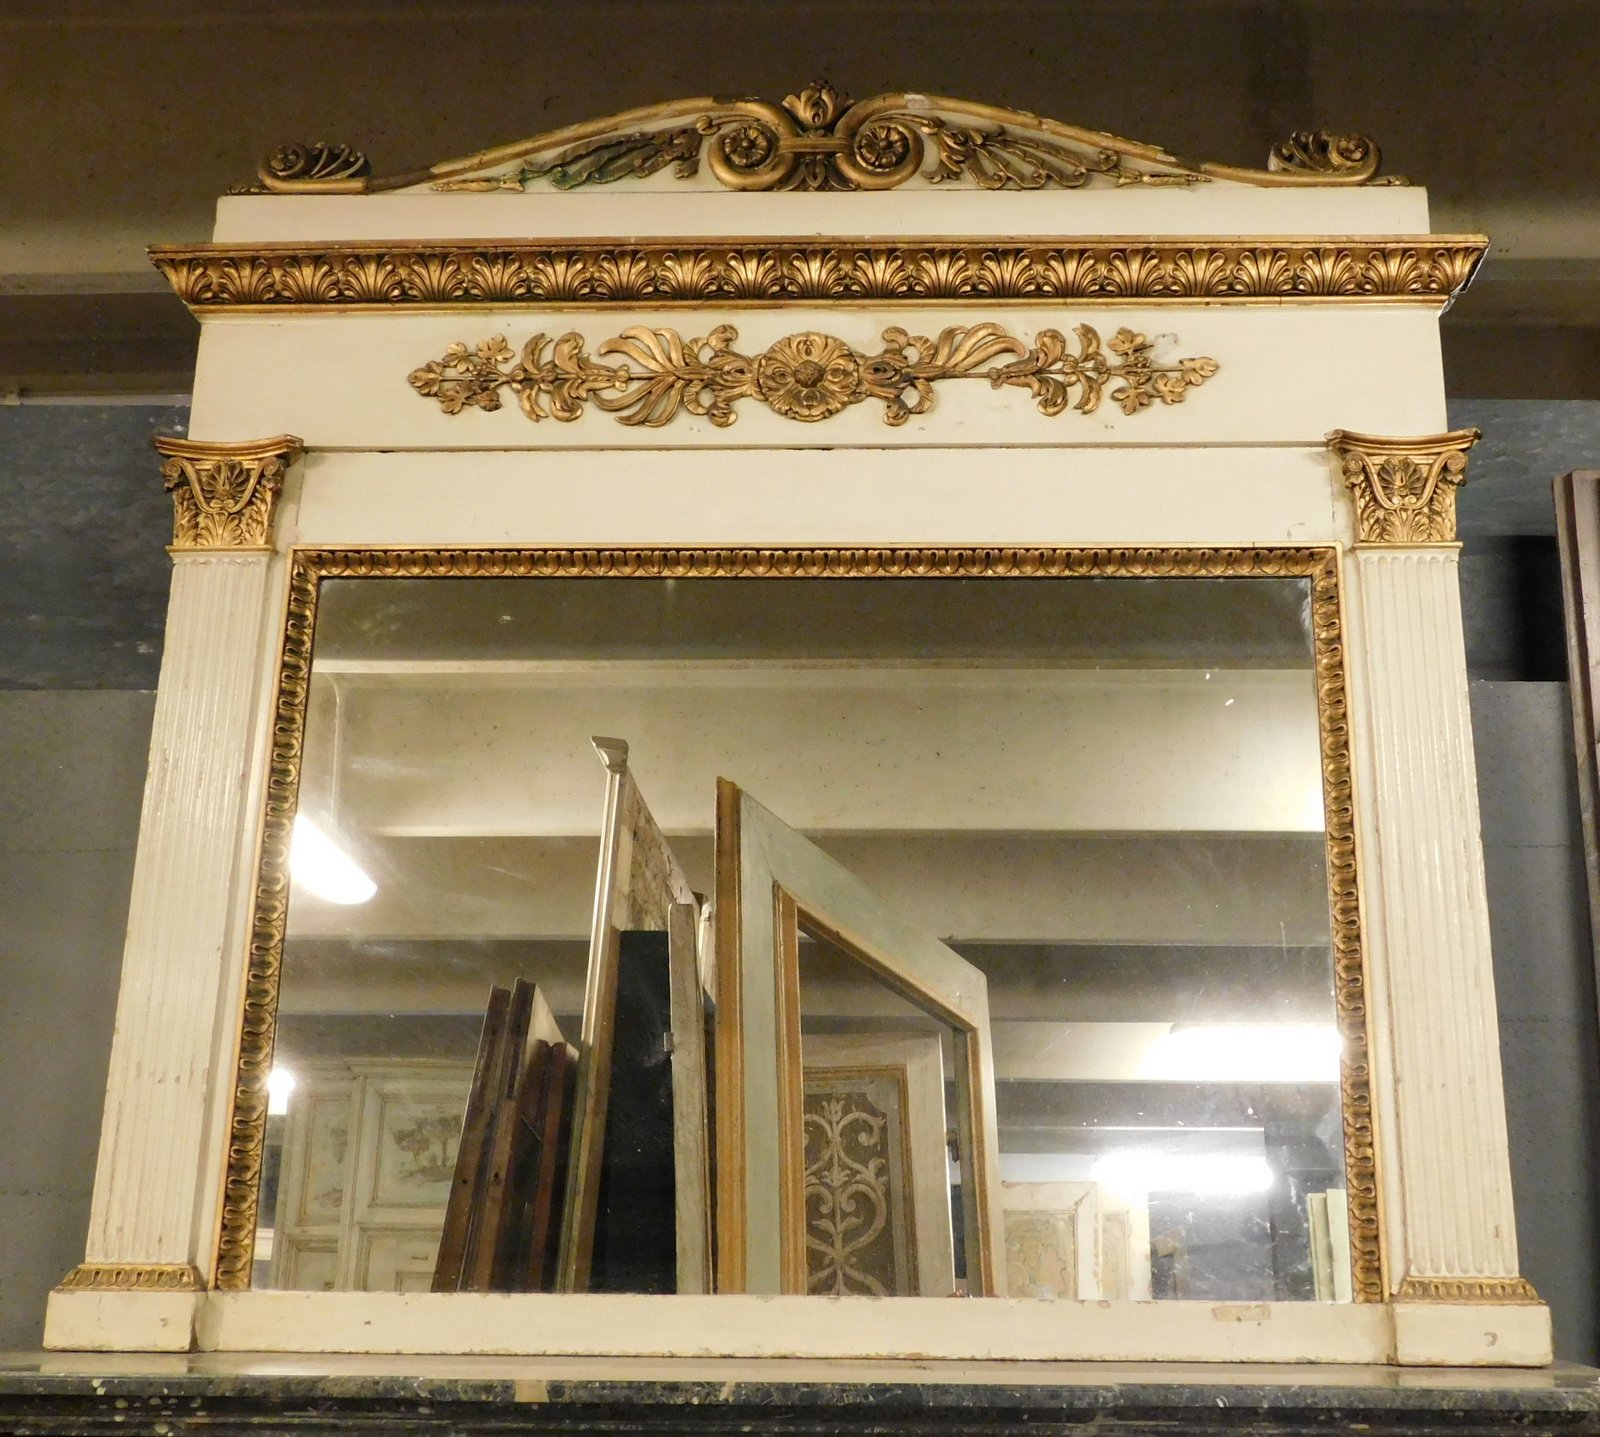 specc295 - specchiera laccata con decori dorati, cm l 160 x h 157 